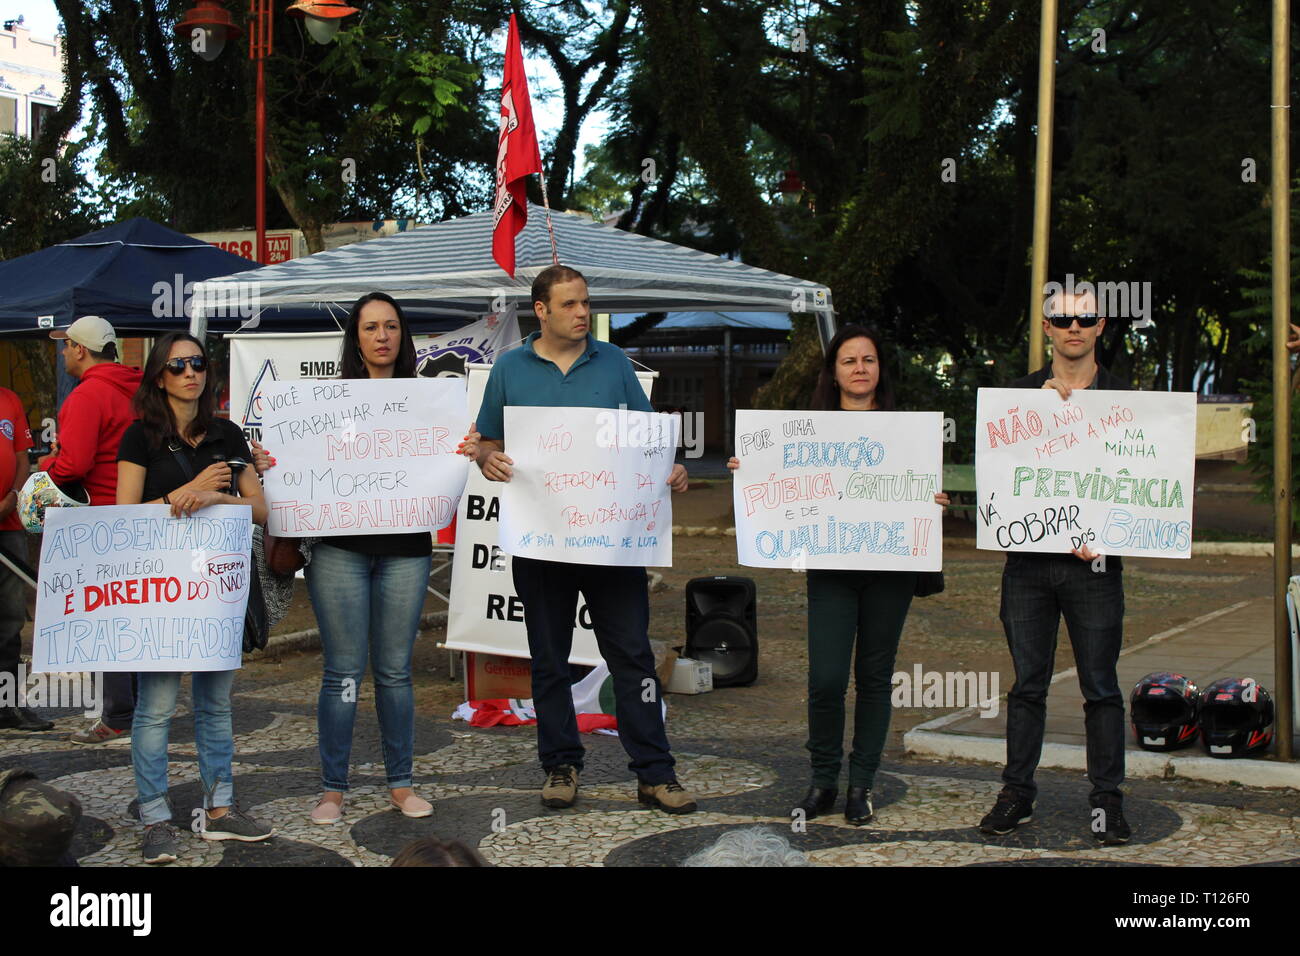 Les travailleurs brésiliens montrent des signes contre le président de l'Bolsonaro la réforme de la sécurité sociale, qui va supprimer les droits de la population Banque D'Images